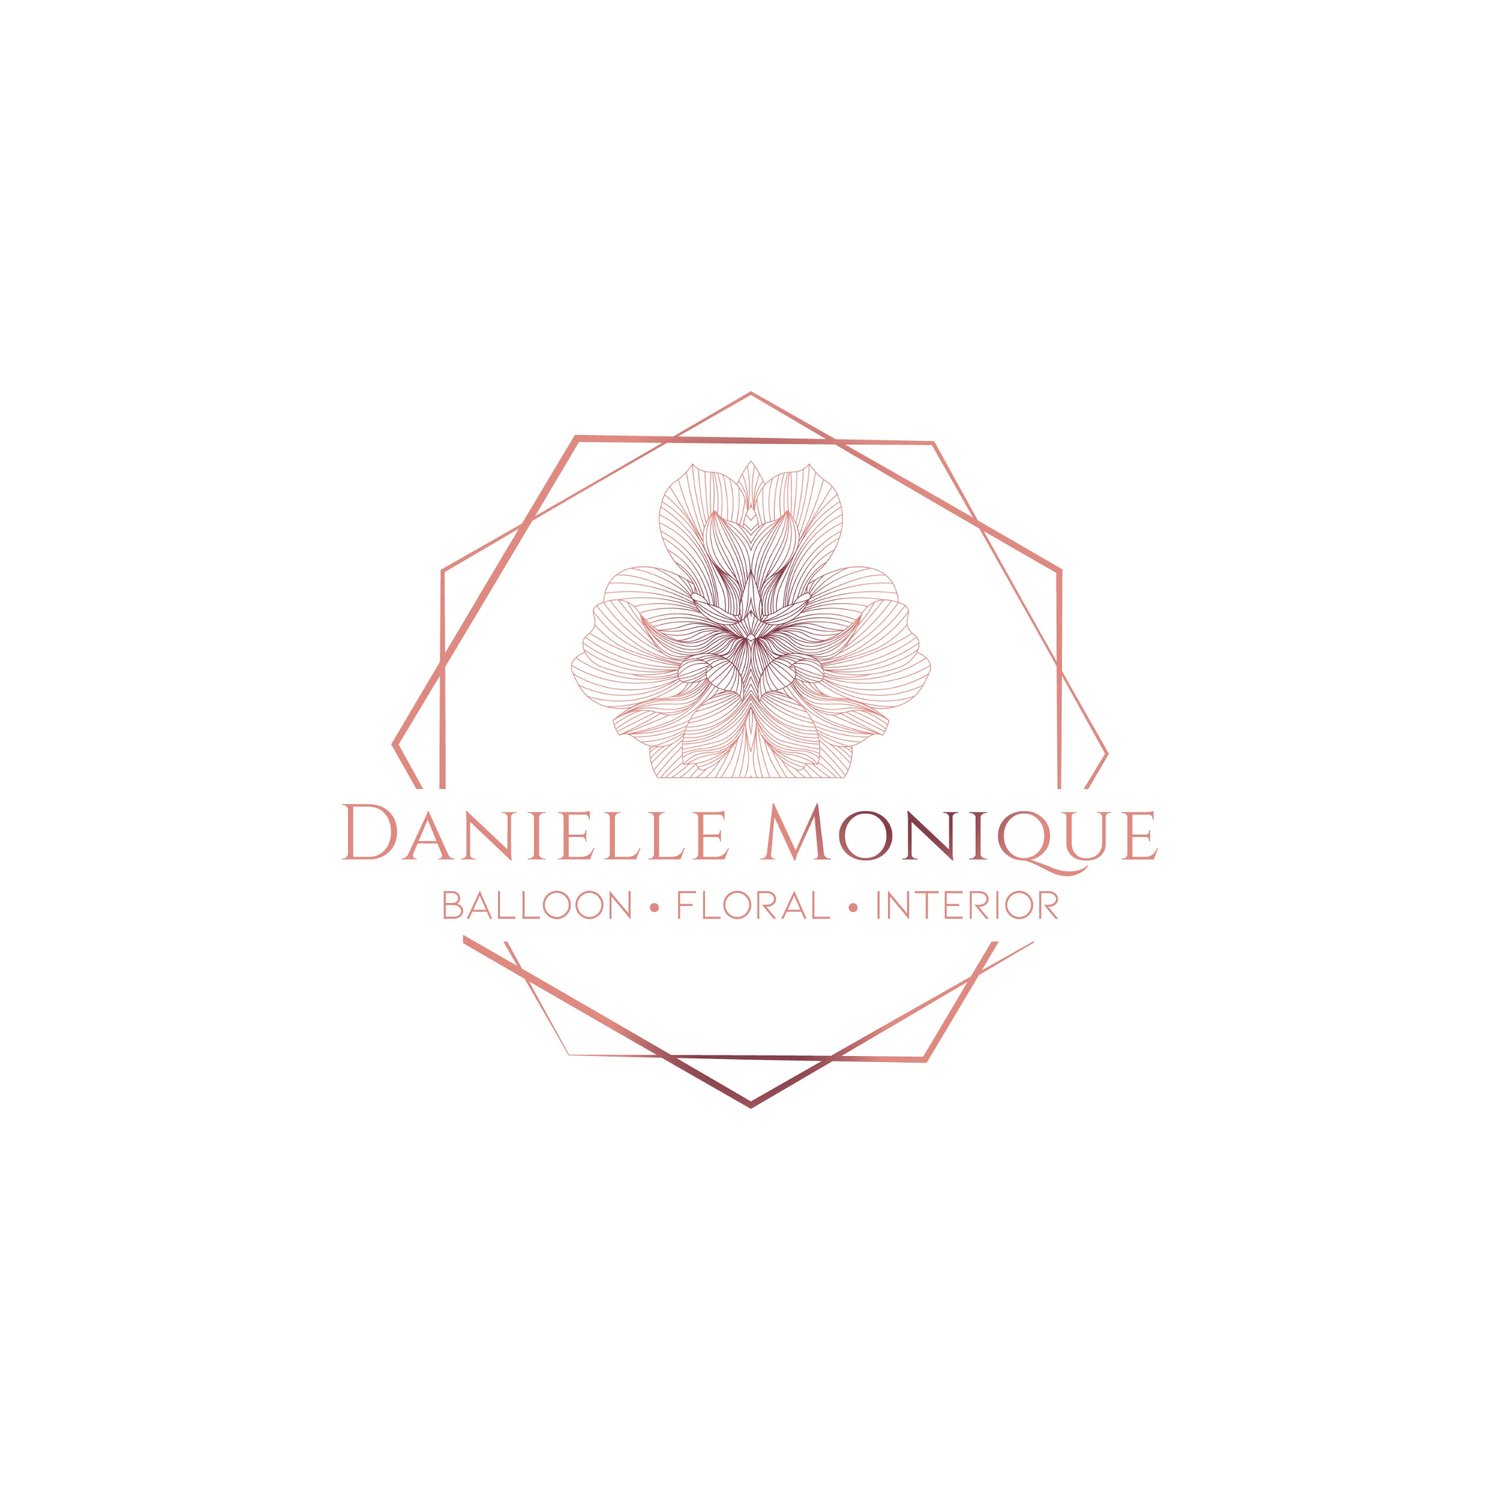 Danielle Monique Designs 